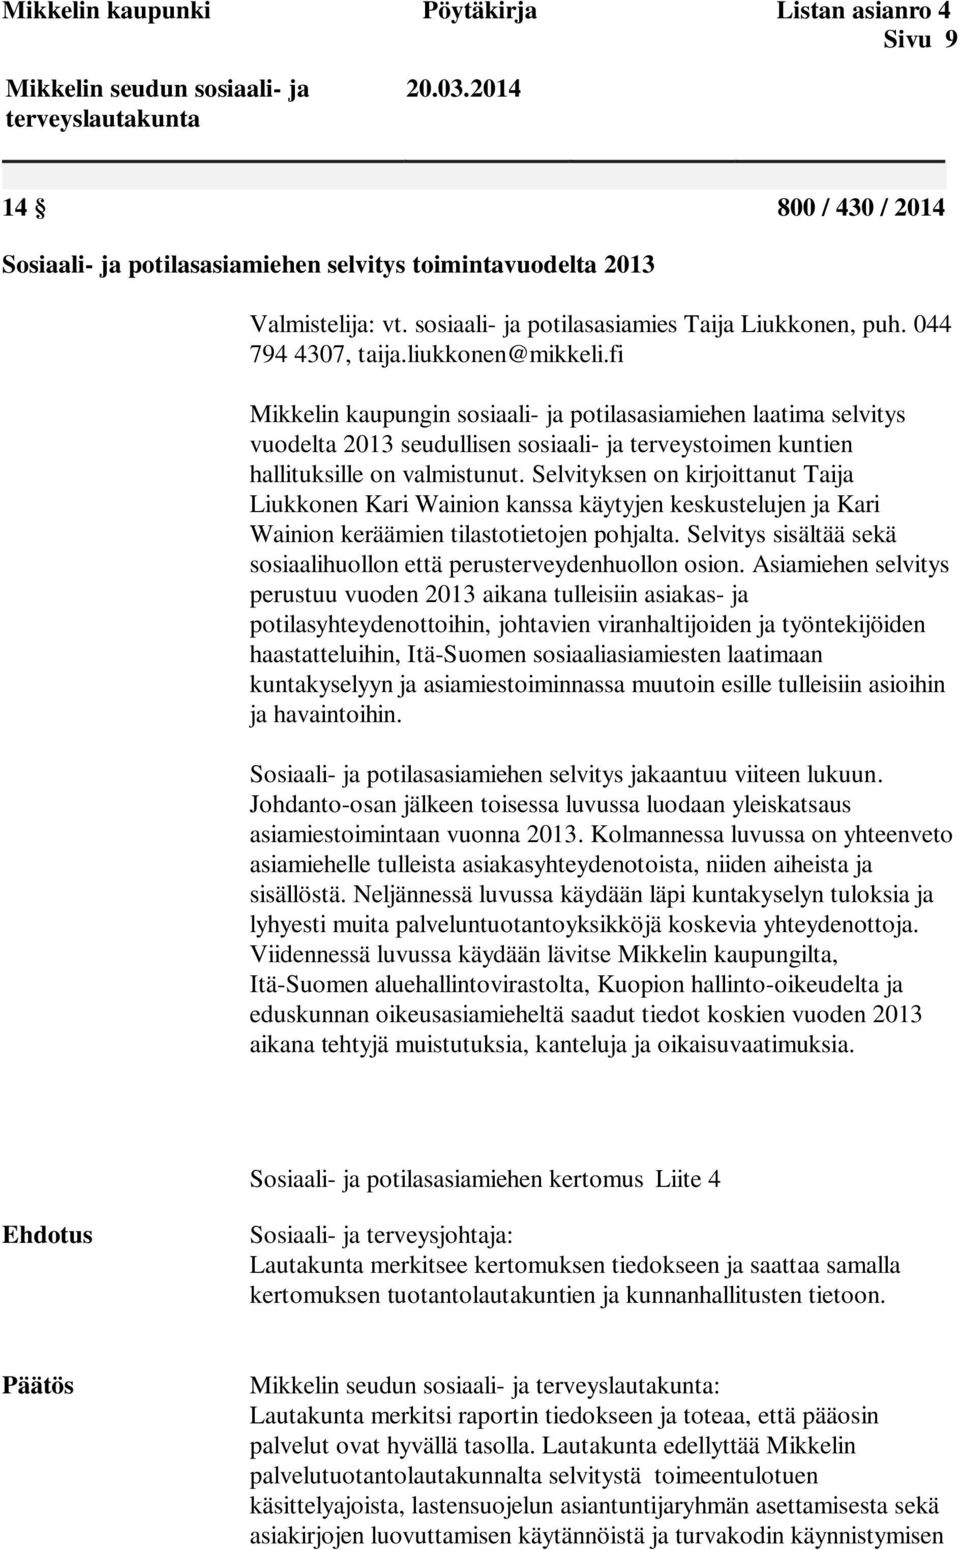 fi Mikkelin kaupungin sosiaali- ja potilasasiamiehen laatima selvitys vuodelta 2013 seudullisen sosiaali- ja terveystoimen kuntien hallituksille on valmistunut.